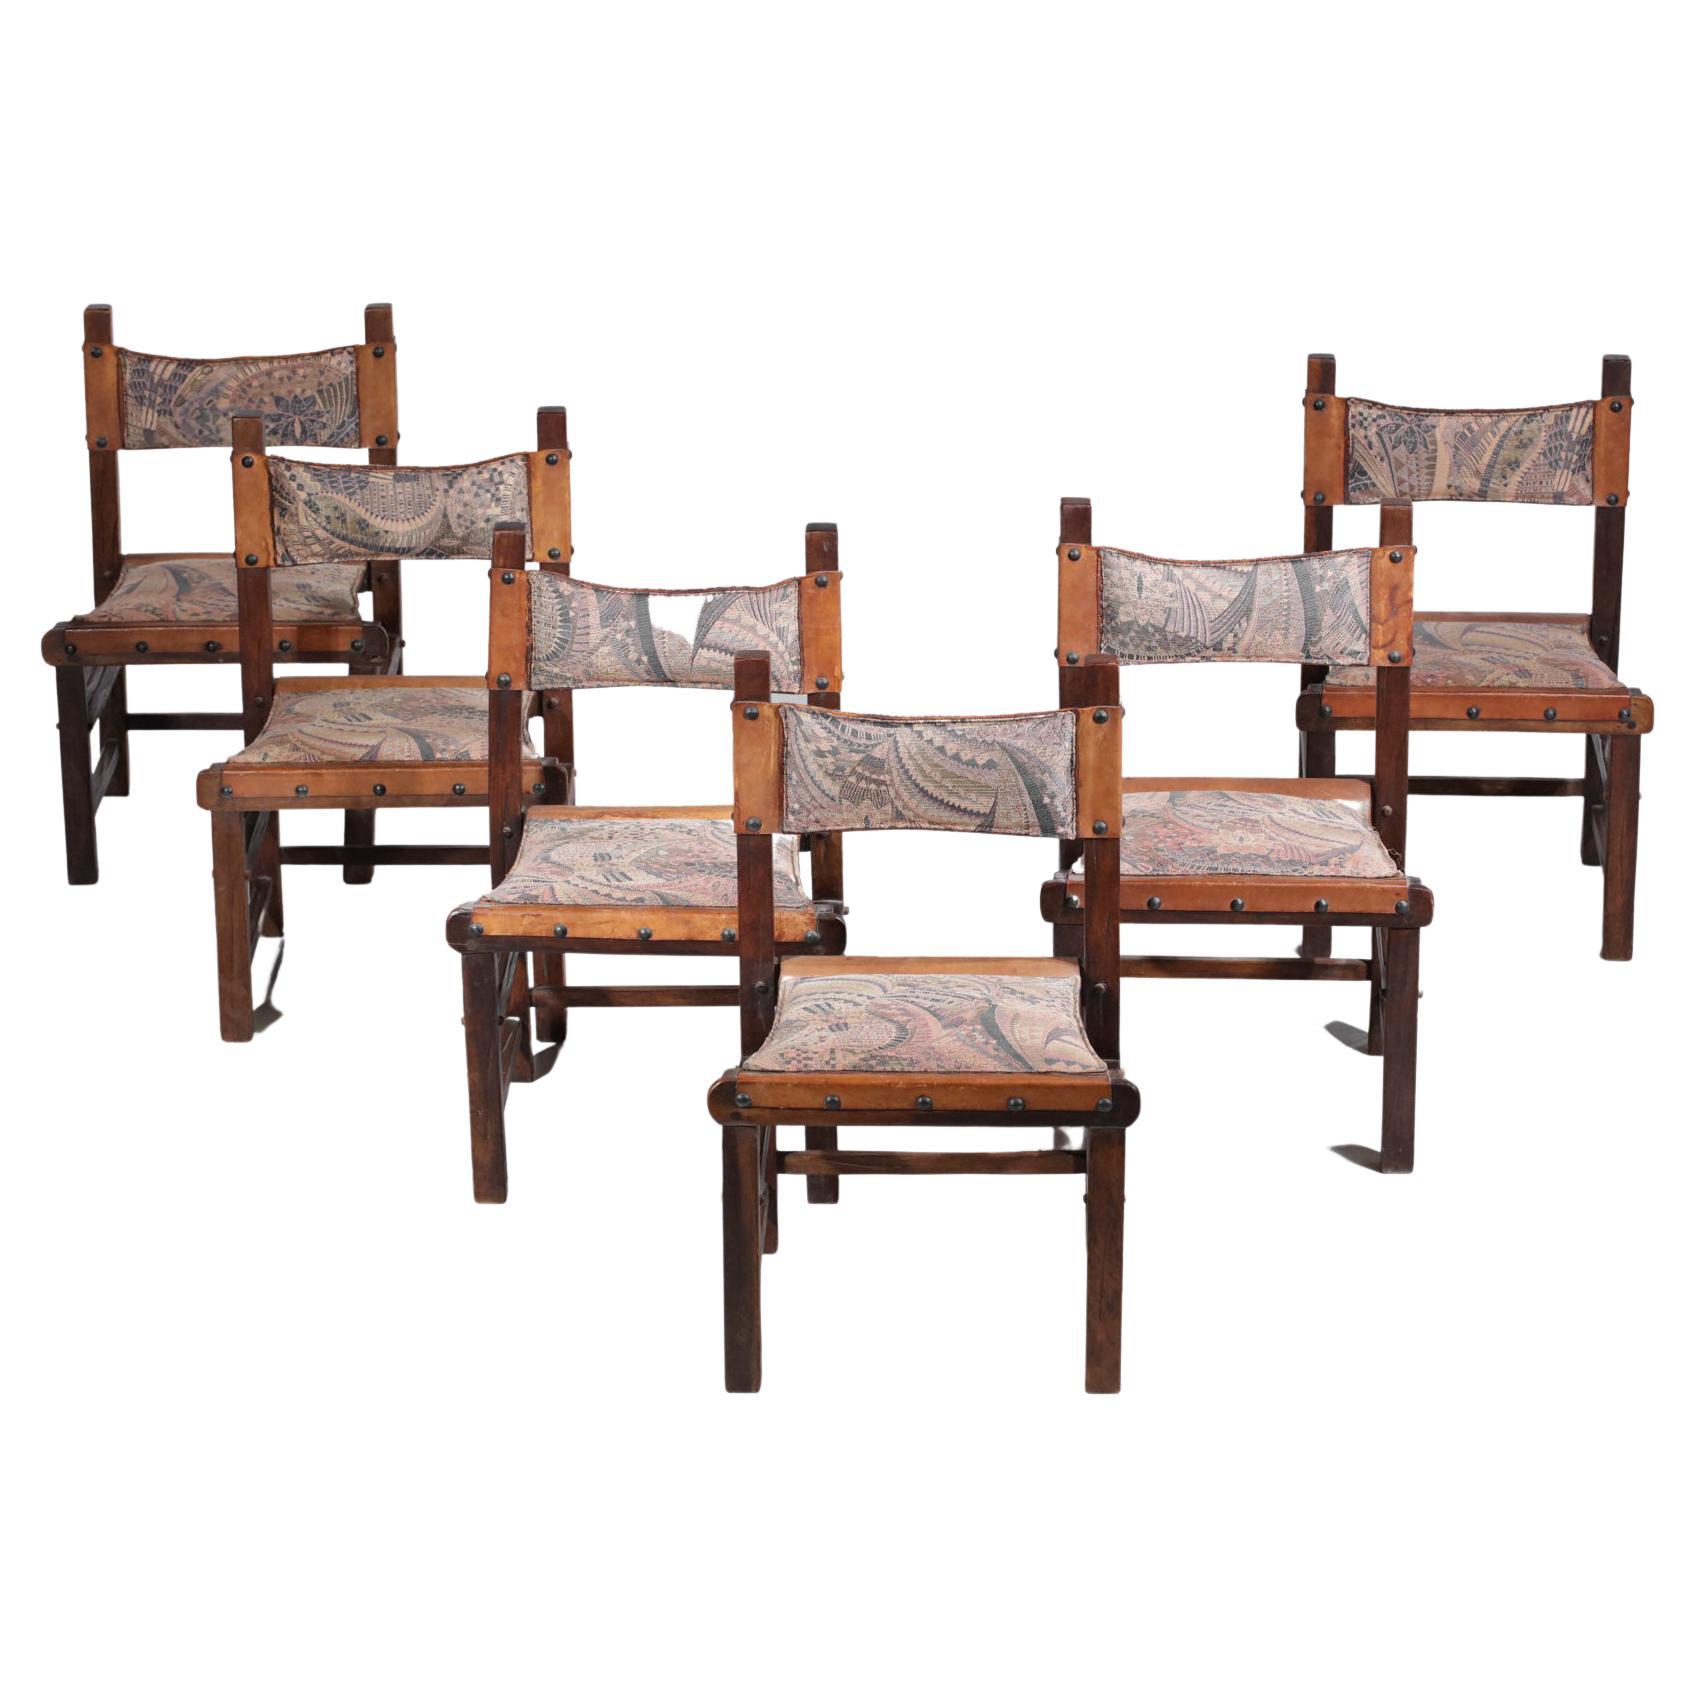 Satz von sechs brasilianischen Stühlen aus den 60er Jahren. Gestell aus Massivholz, Rückenlehne und Sitzfläche aus cognacfarbenem Leder, bezogen mit einem geometrisch gemusterten Stoff (in gutem Zustand gekauft, Stoff schon lange auf den Sitzen